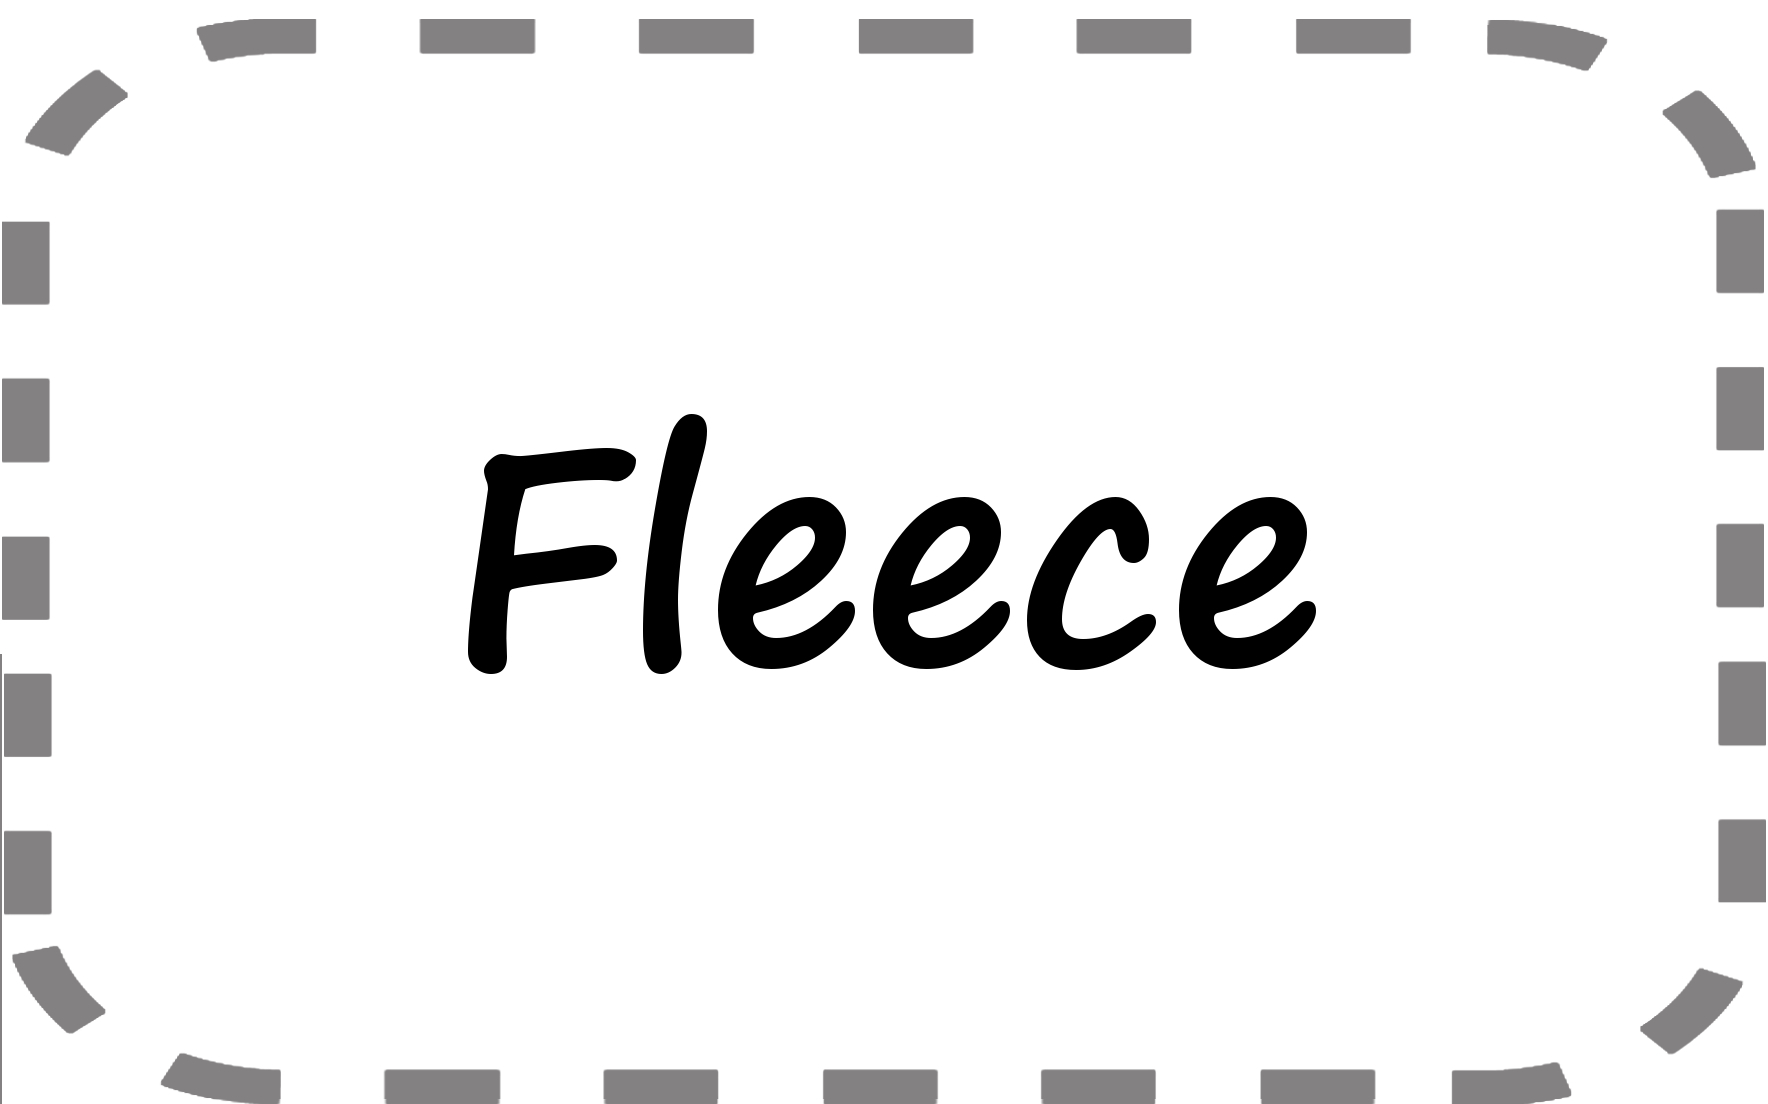 fleece